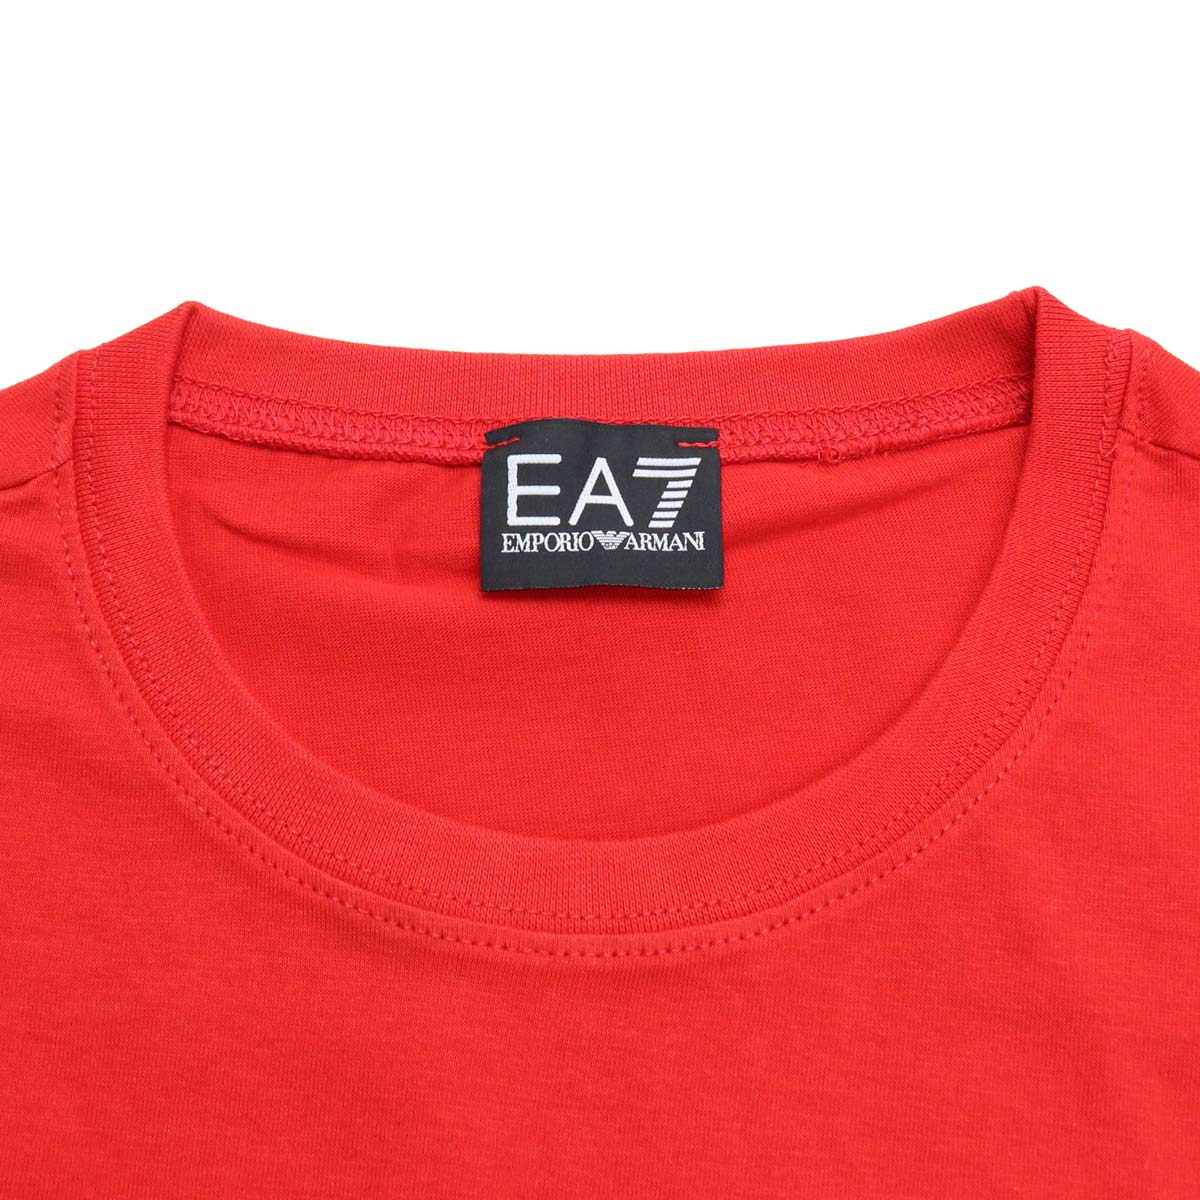 EA7 イーエーセブン 6HPT07 Tシャツ RACING RED レッド系 メンズ